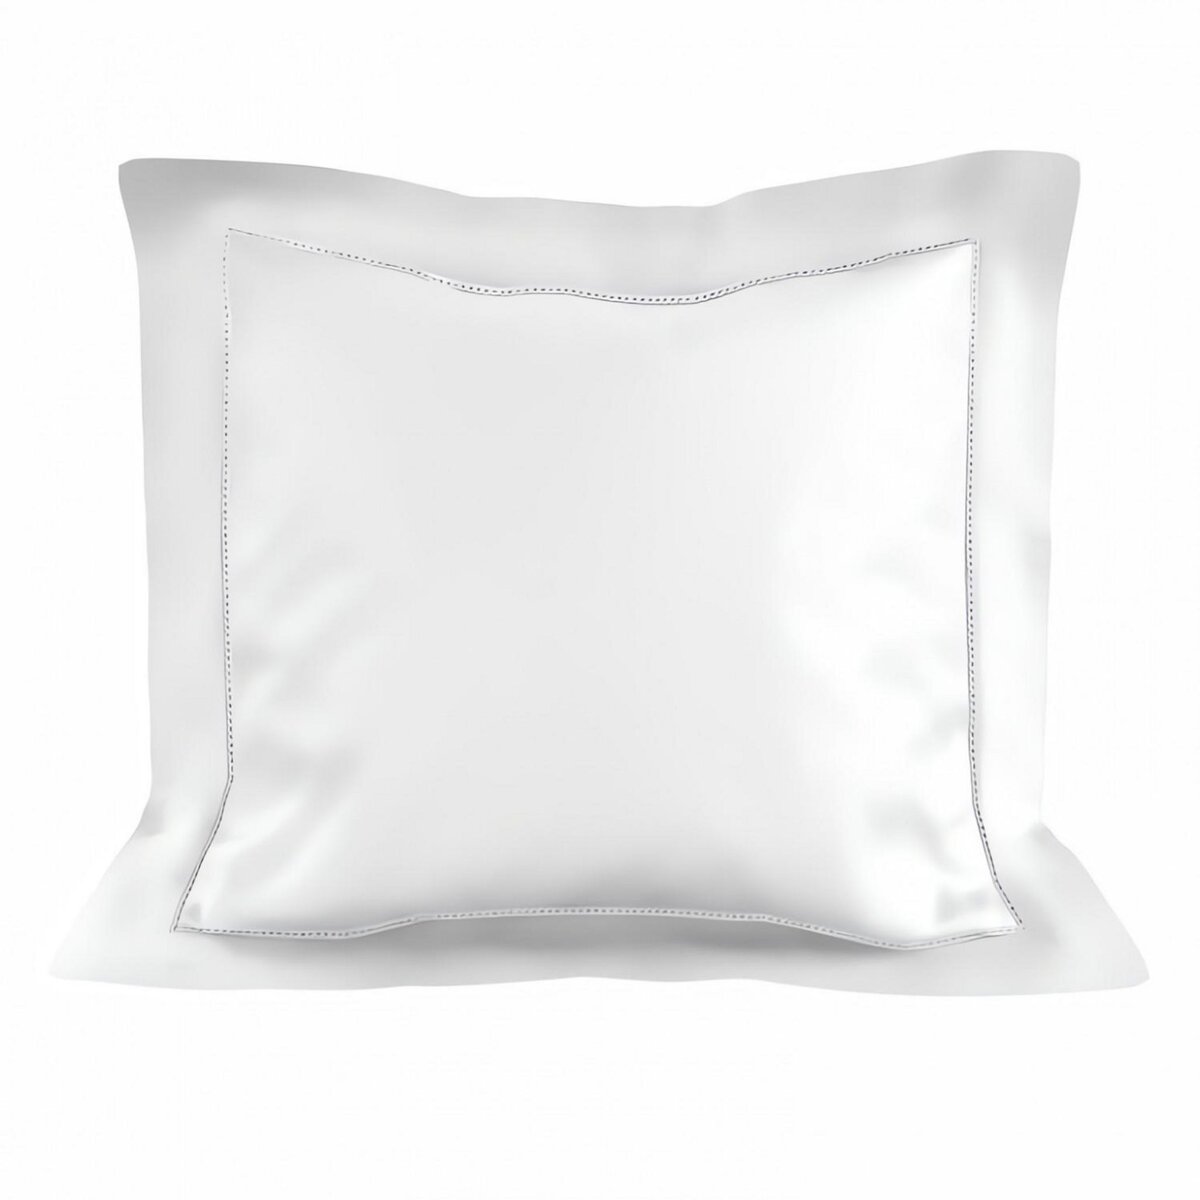 SOLEIL D'OCRE Taie d'oreiller en coton 63x63 cm PERCALE blanc, par Soleil d'ocre